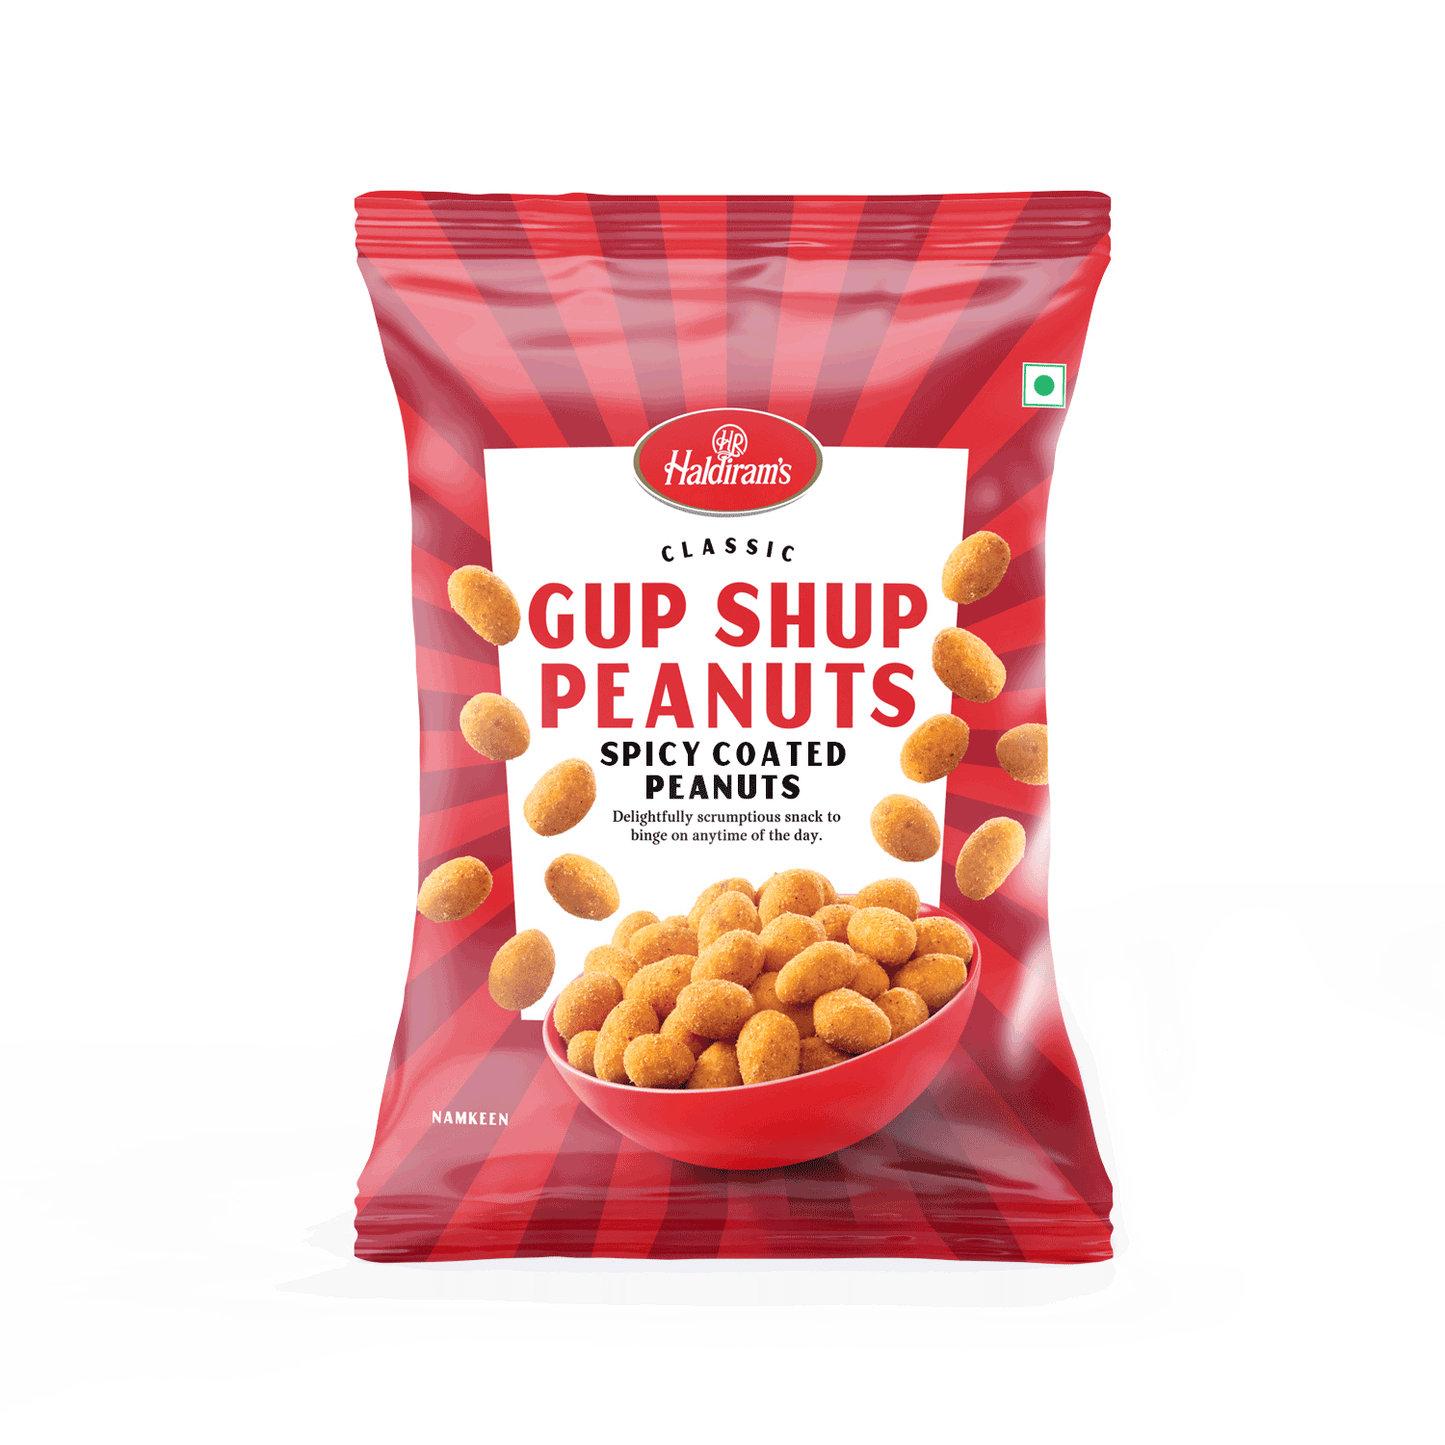 Gup Shup Peanuts